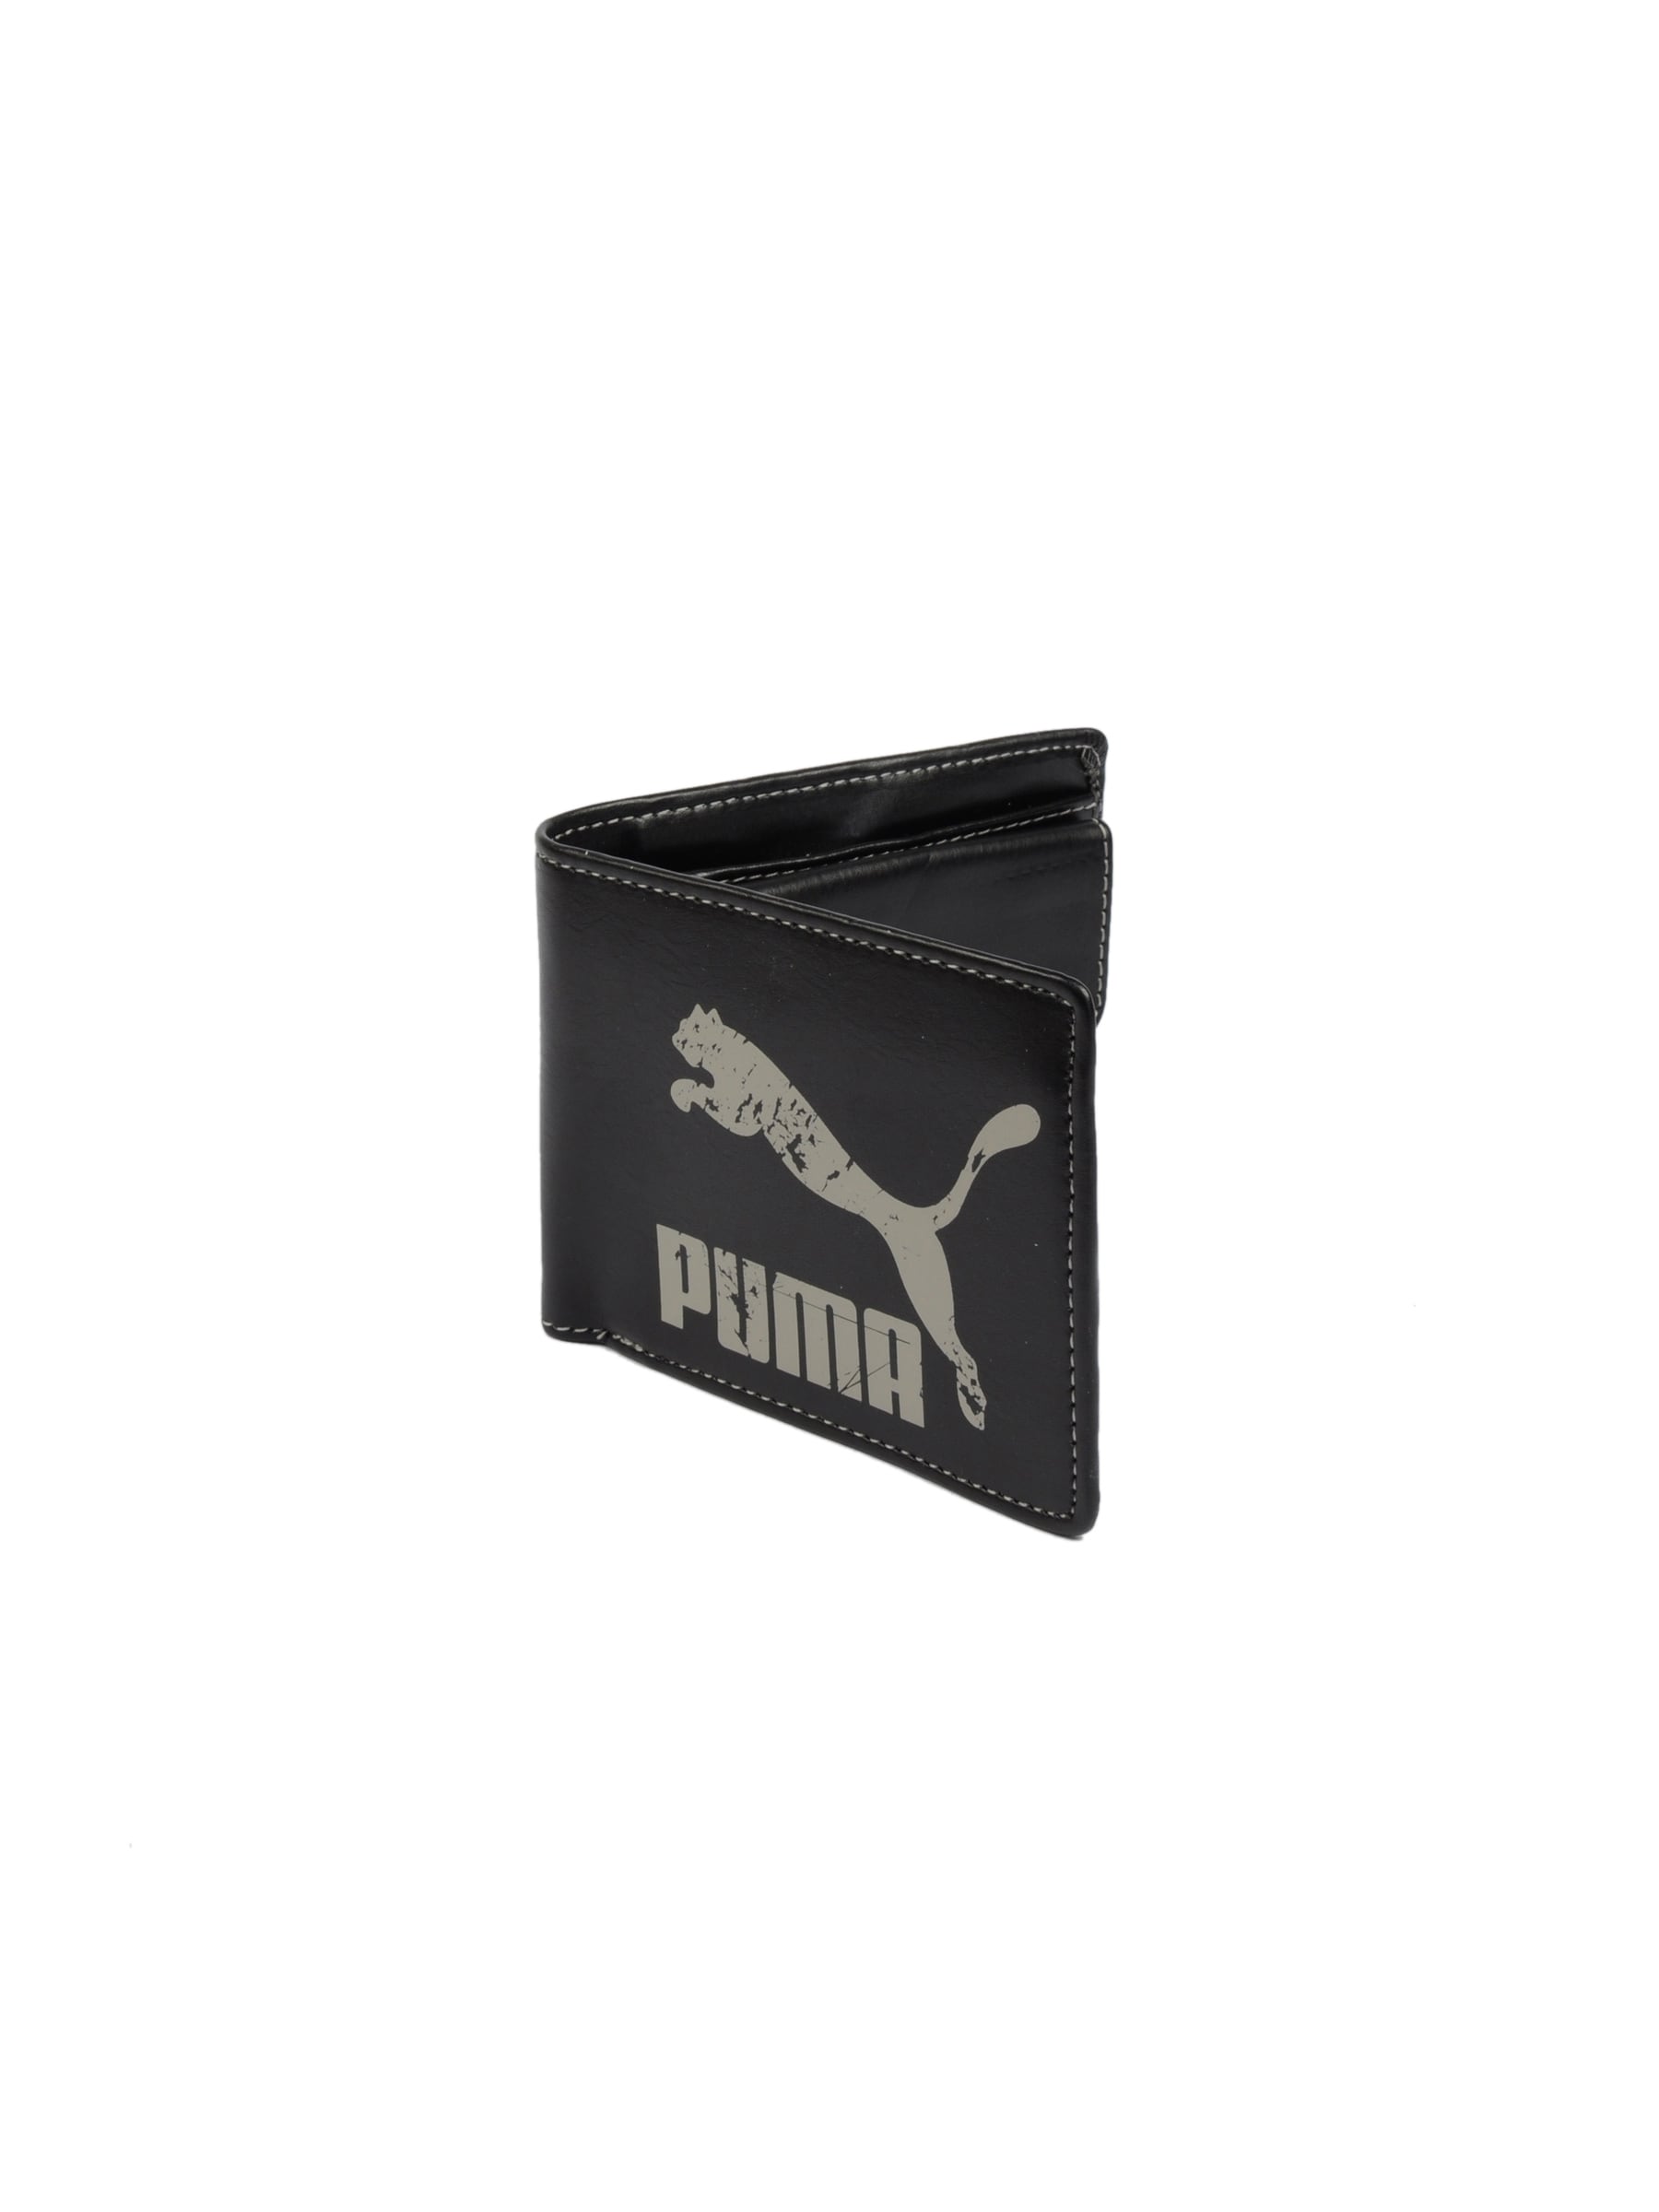 Puma Men Originals Billfold Black Wallet